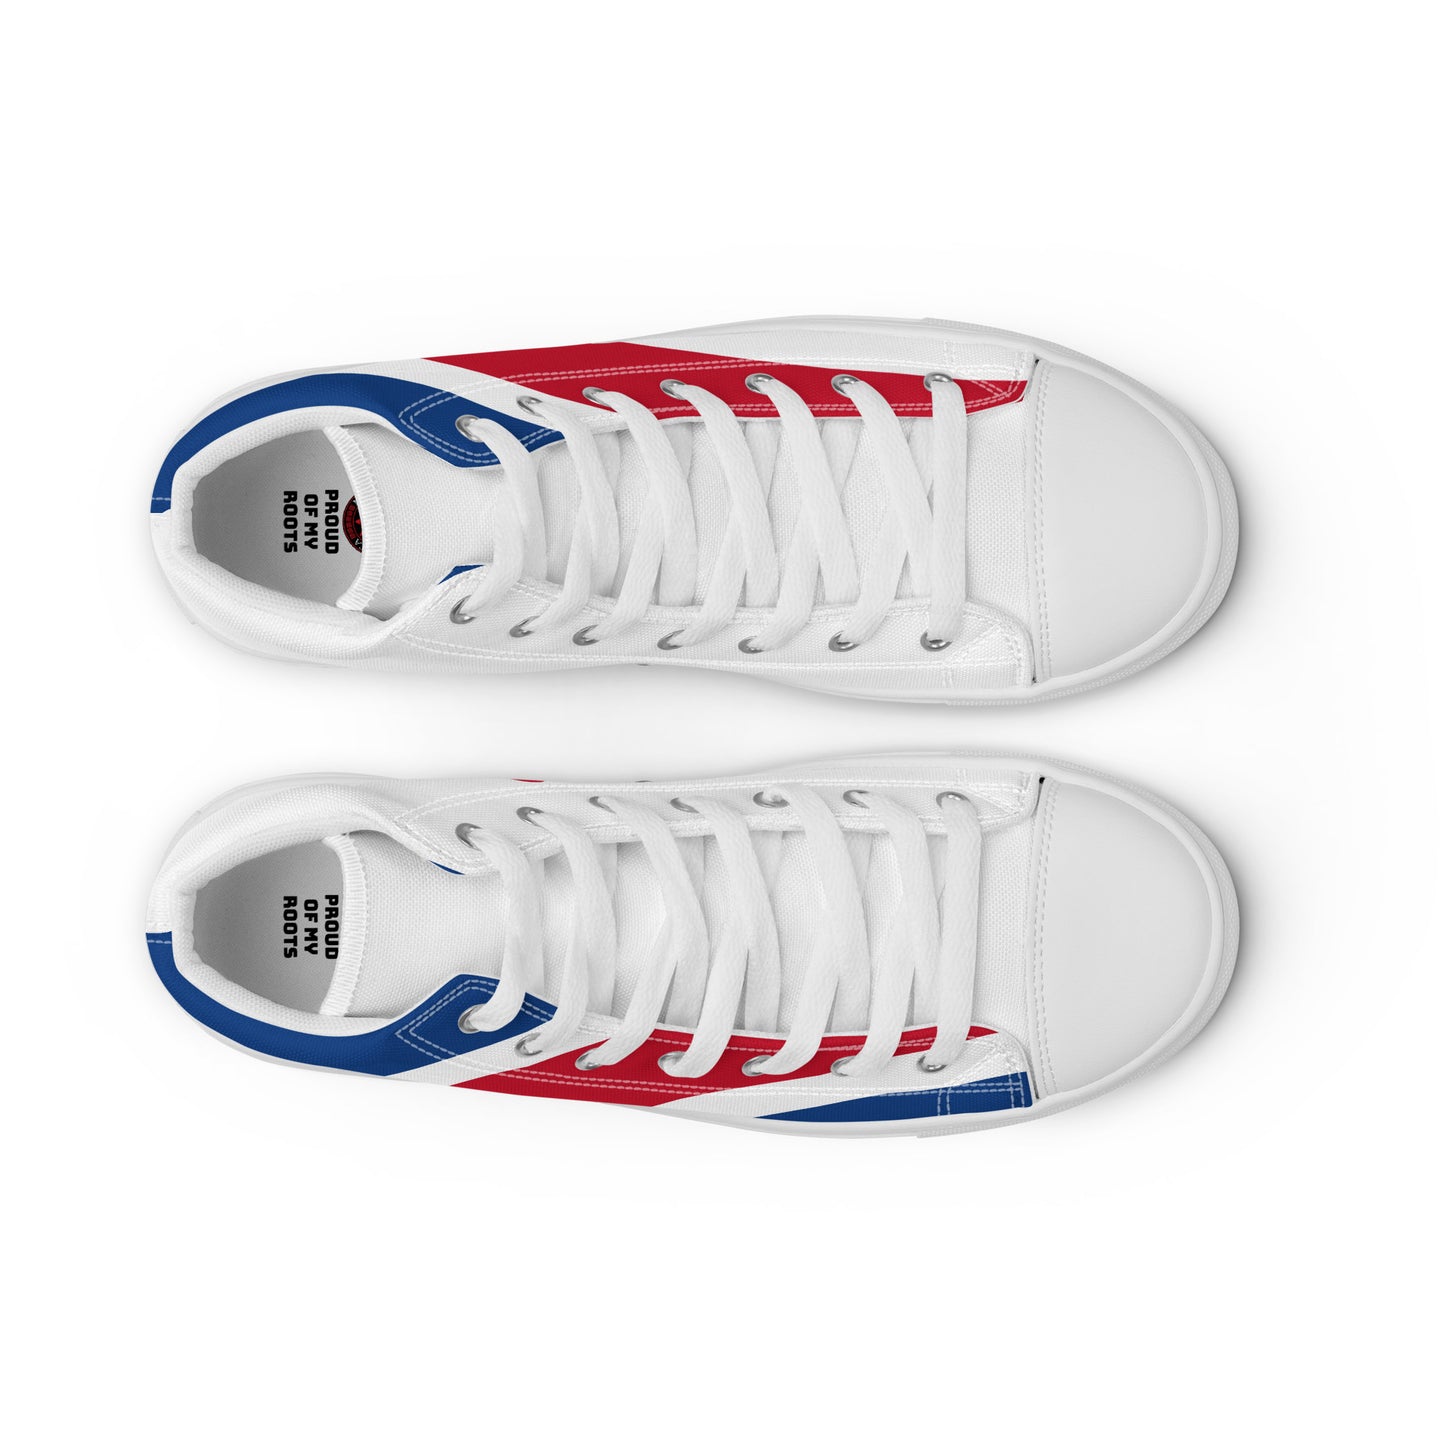 Costa Rica - Men - Bandera - High top shoes